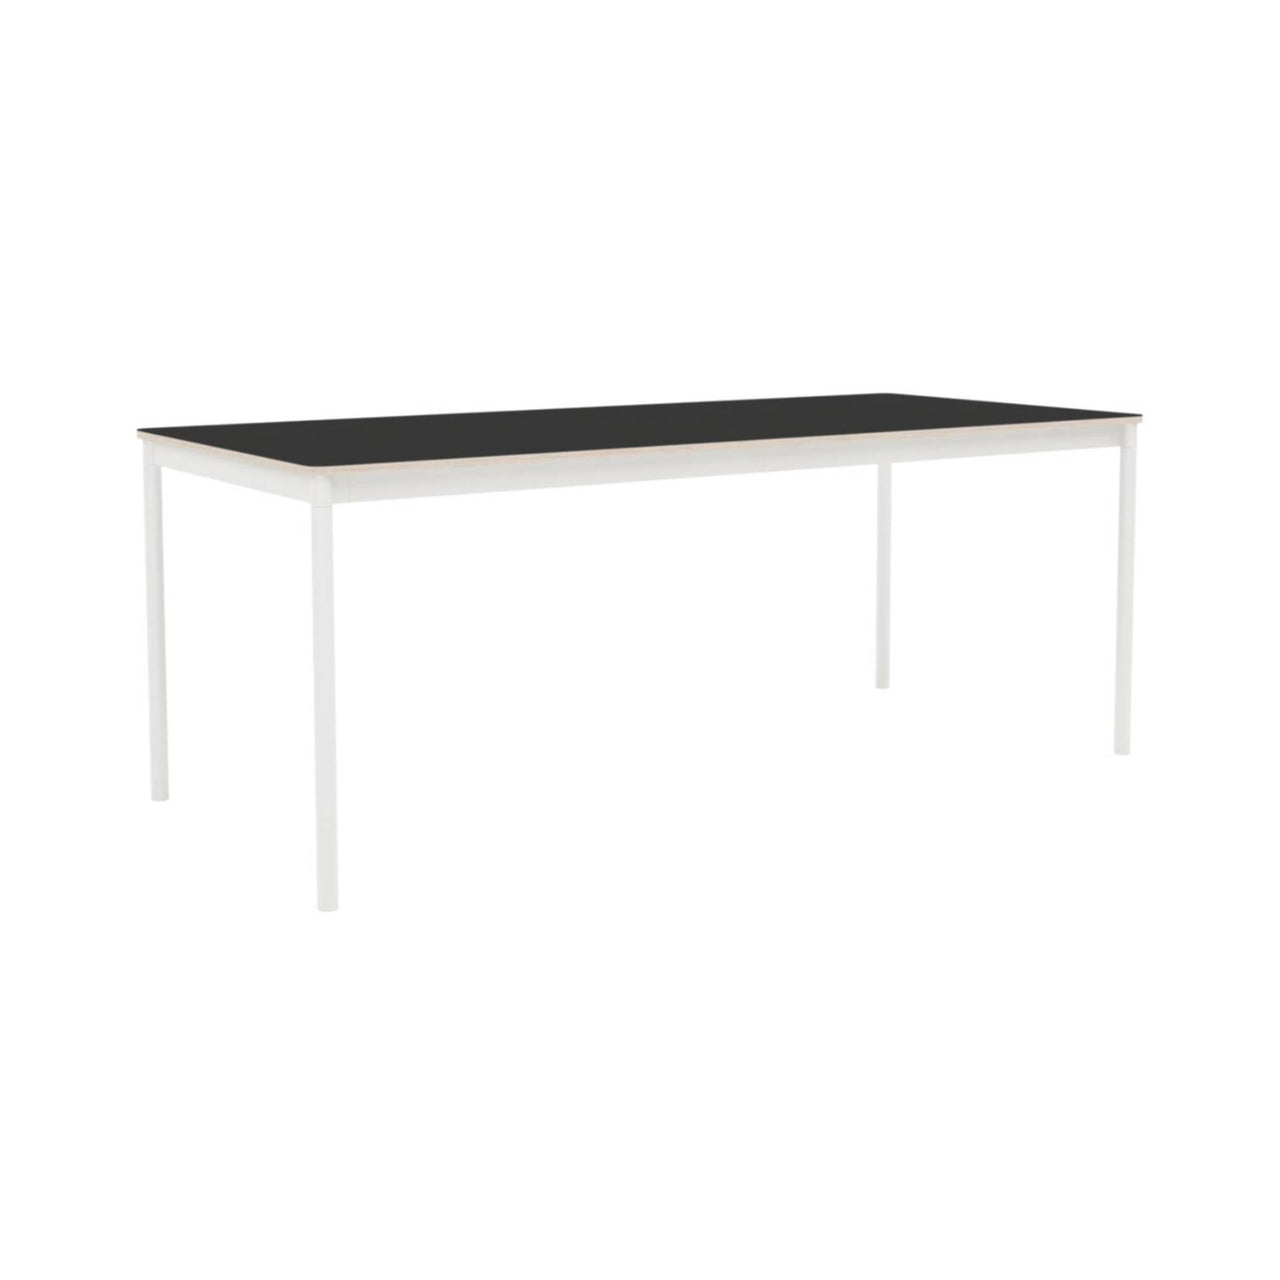 Base Table: Medium + Black Nanolaminate + Plywood + White